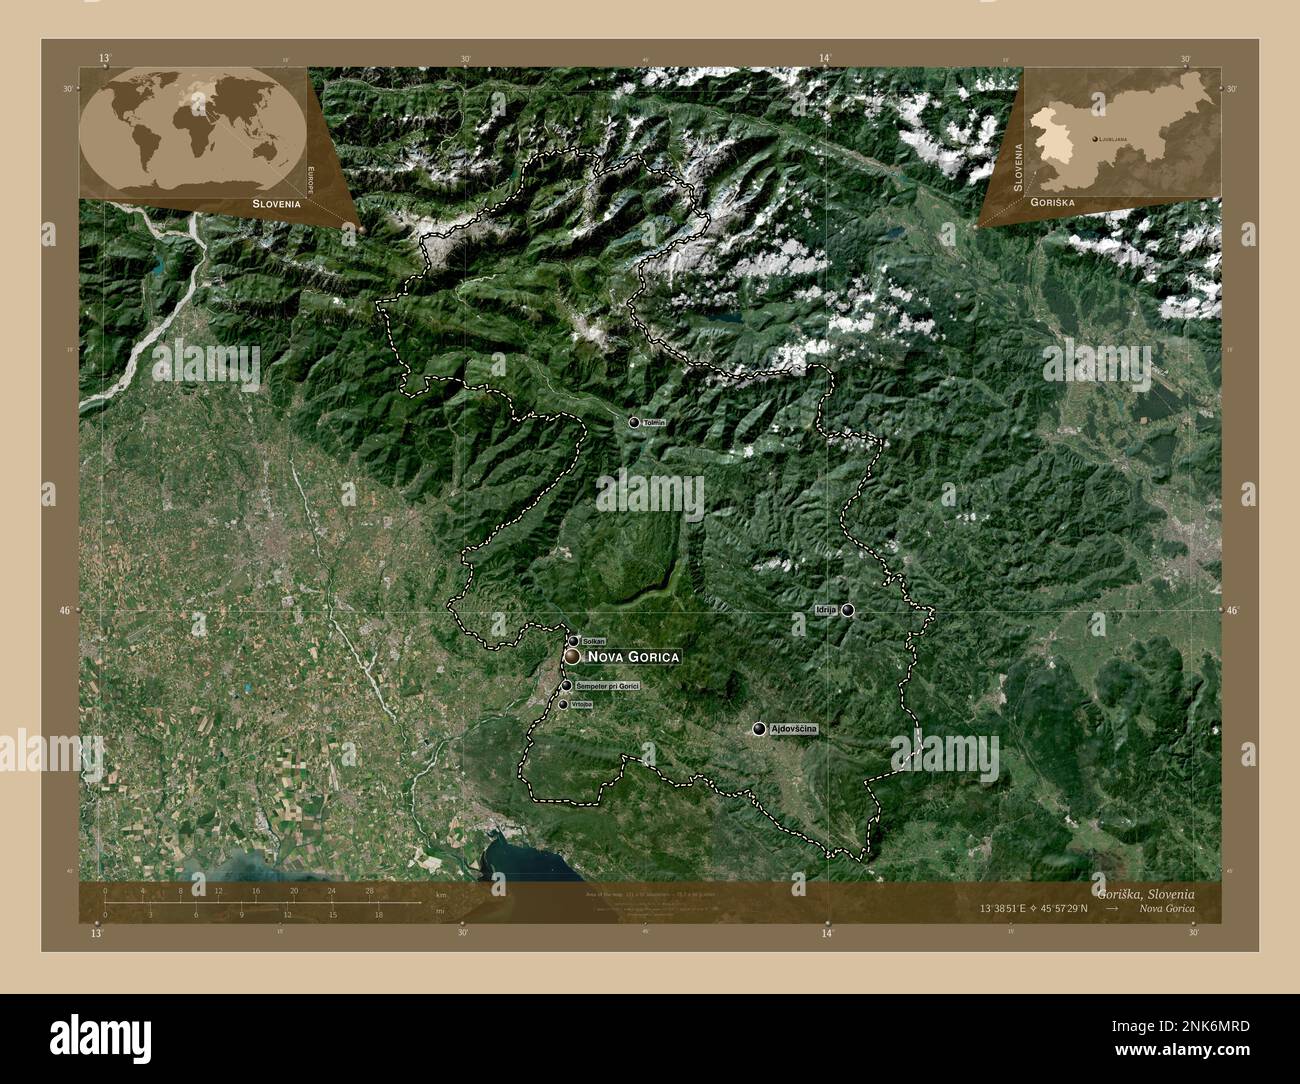 Goriska, regione statistica della Slovenia. Mappa satellitare a bassa risoluzione. Località e nomi delle principali città della regione. Posizione ausiliaria angolo ma Foto Stock